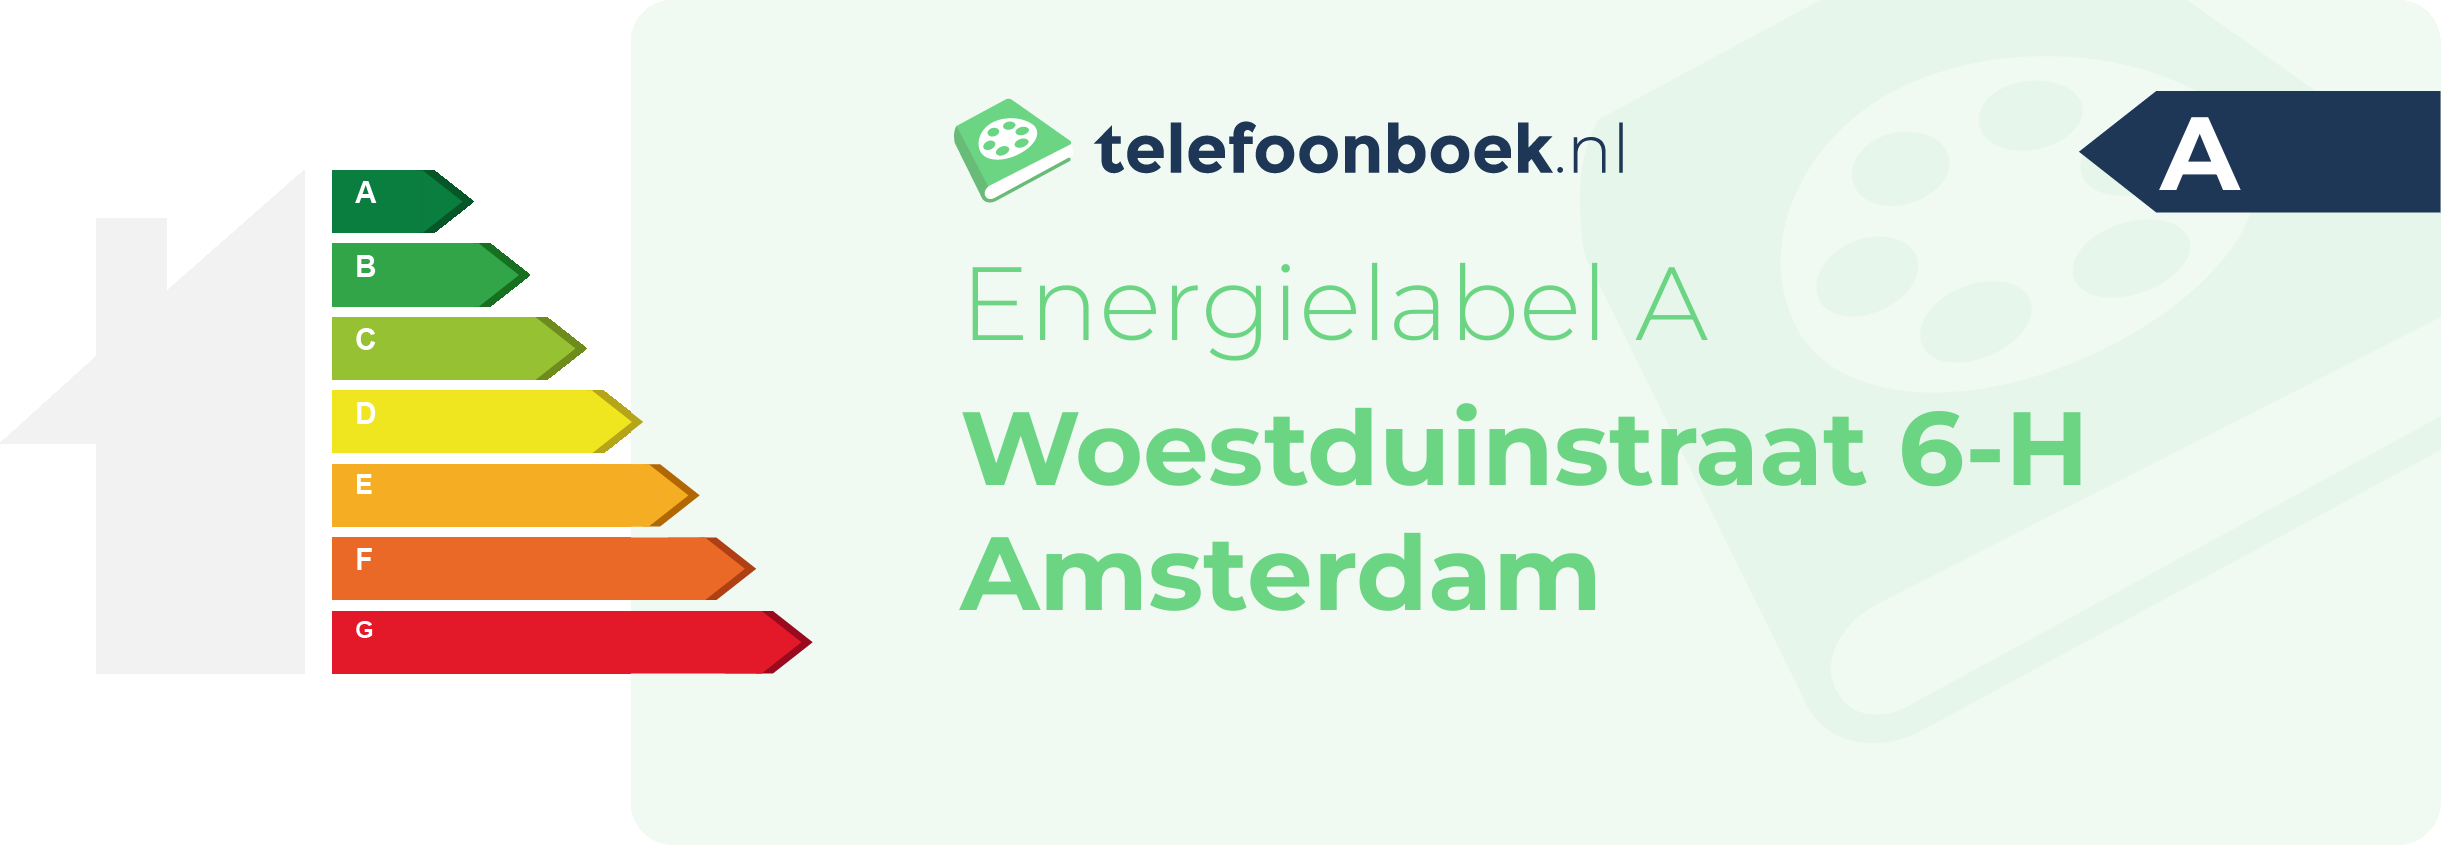 Energielabel Woestduinstraat 6-H Amsterdam